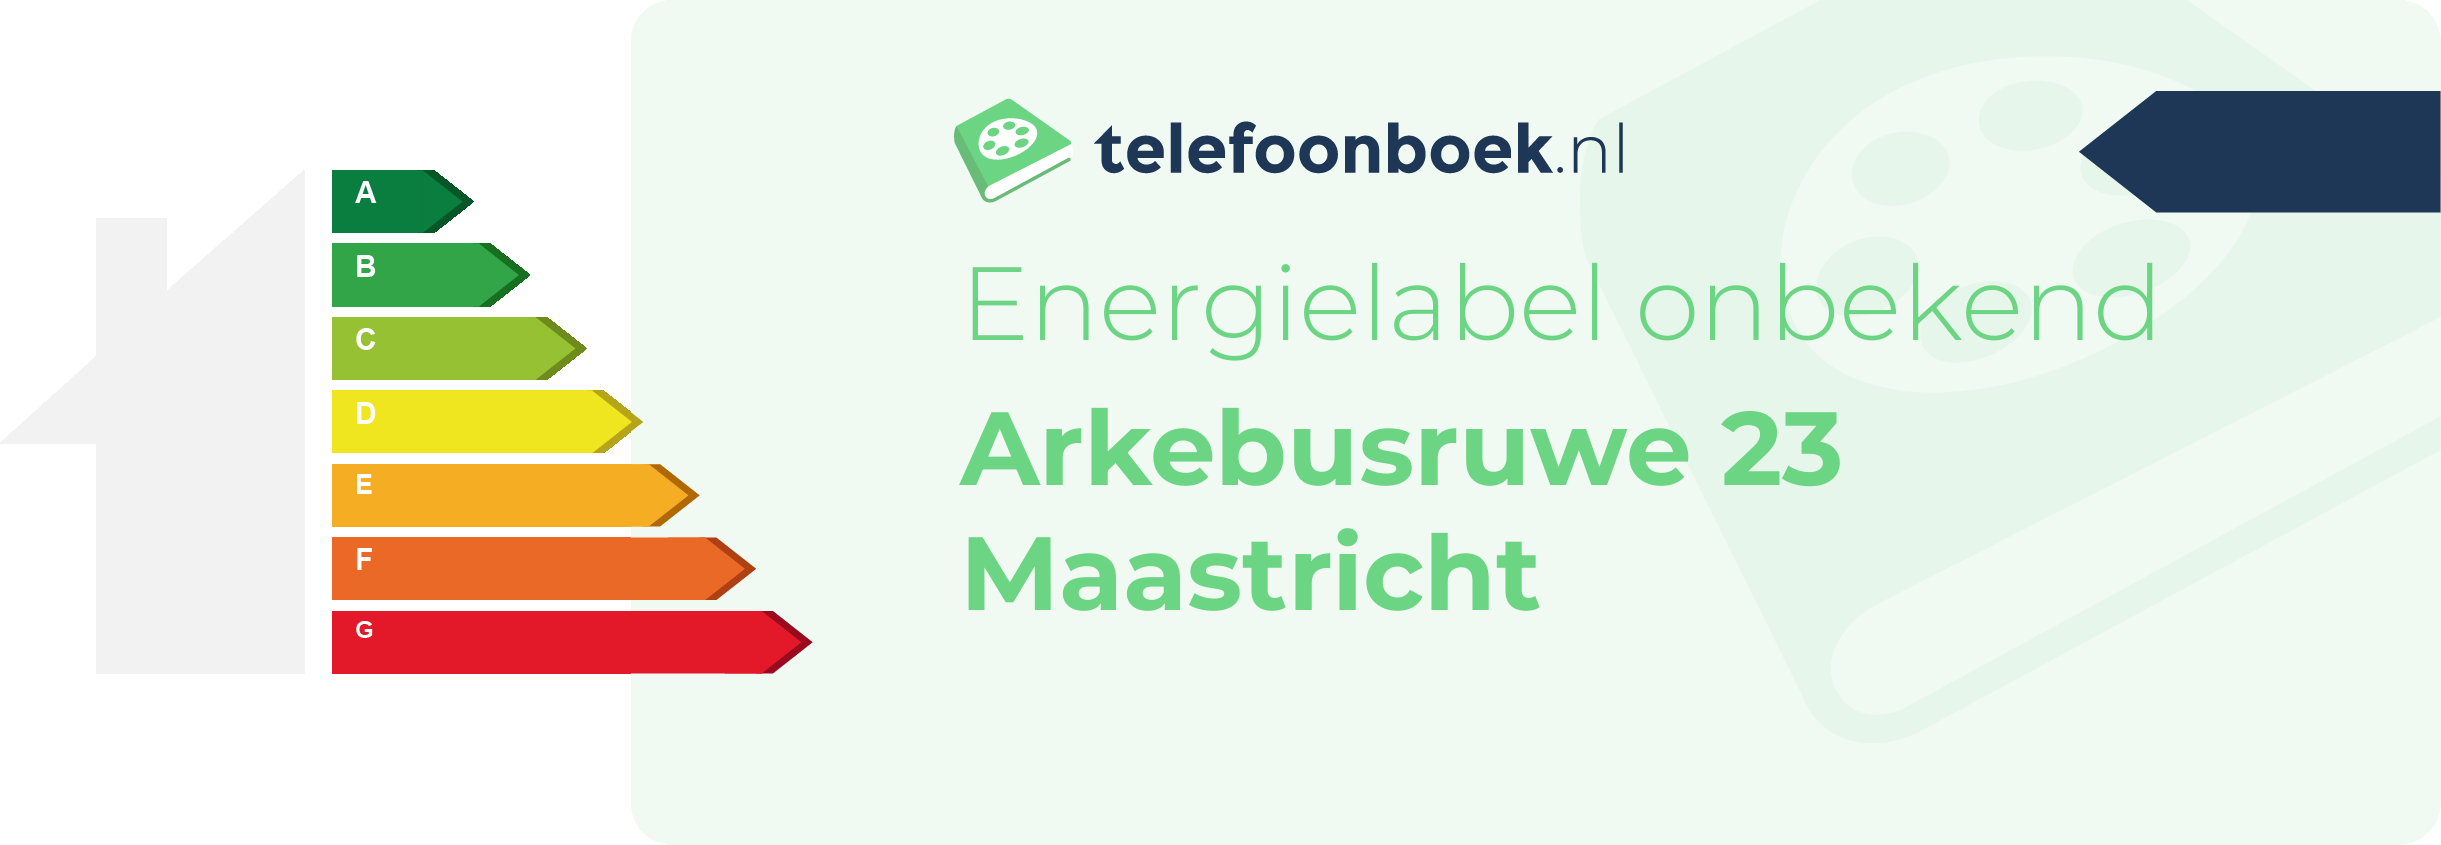 Energielabel Arkebusruwe 23 Maastricht